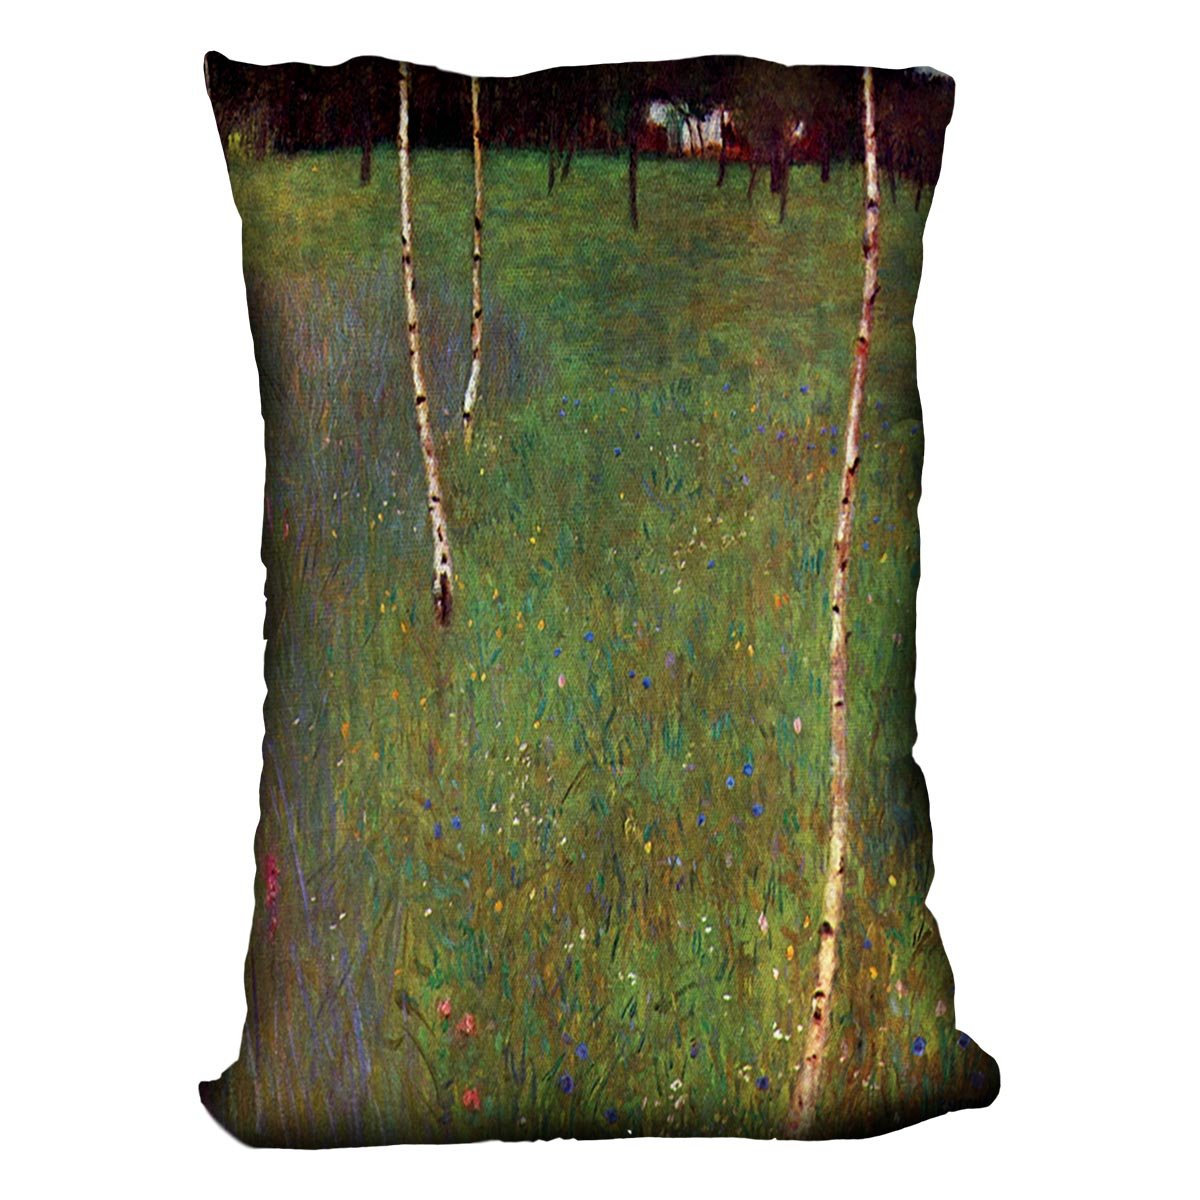 Farmhouse by Klimt Throw Pillow